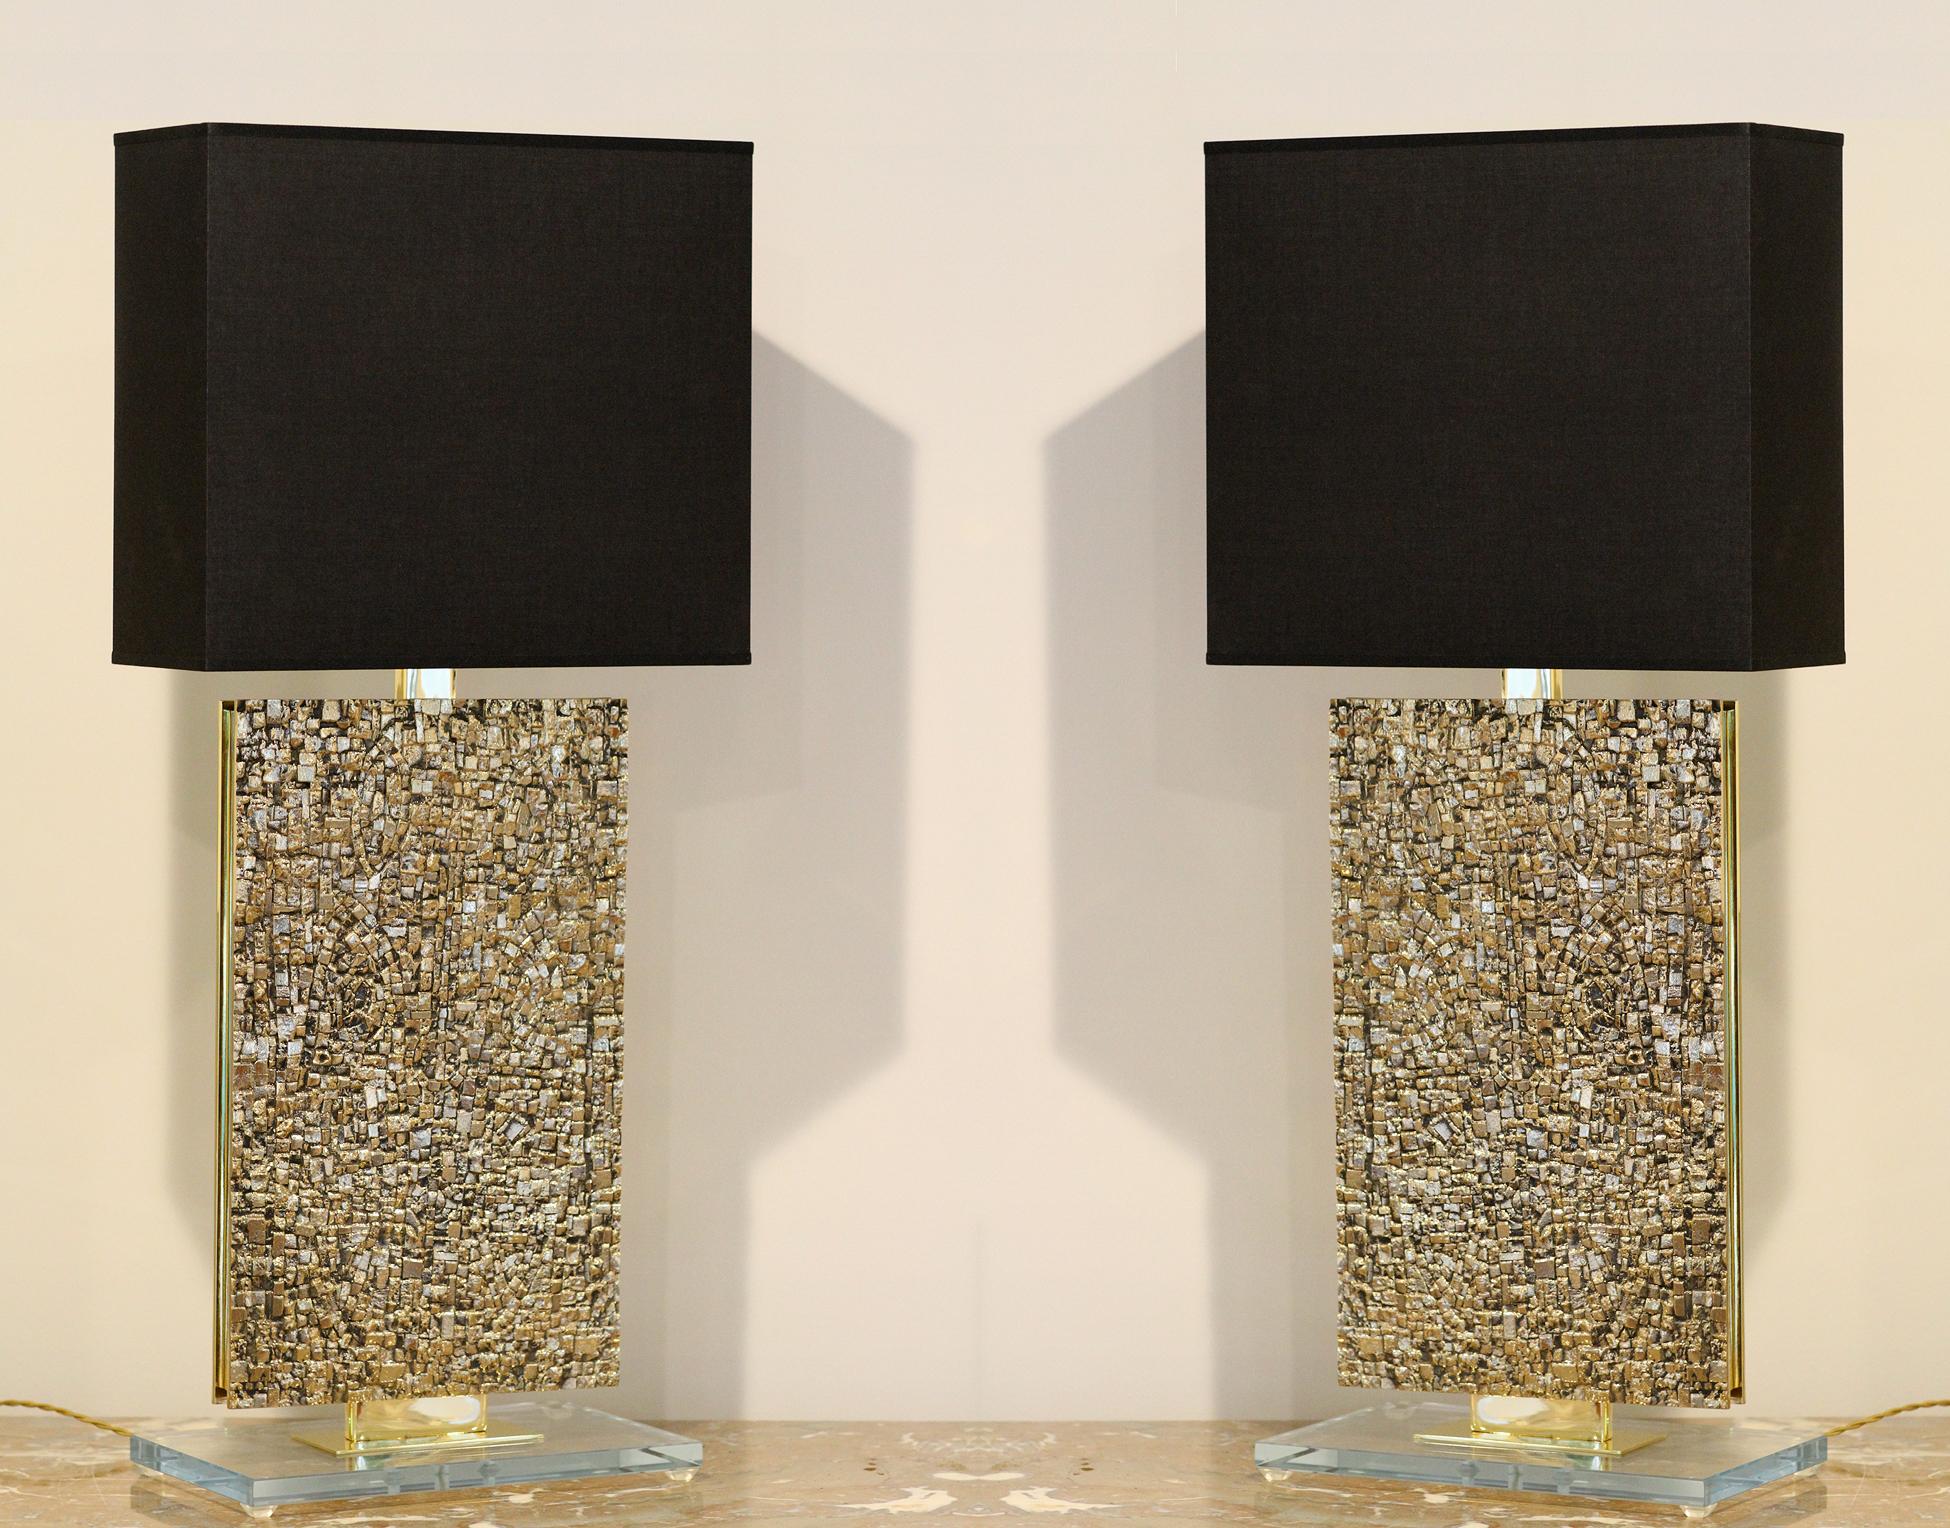 Modèle PM3
Importante et impressionnante paire de lampes de table
Plaque en bronze montée sur un cadre en laiton ou en métal doré. Base en verre Starfire 3/4